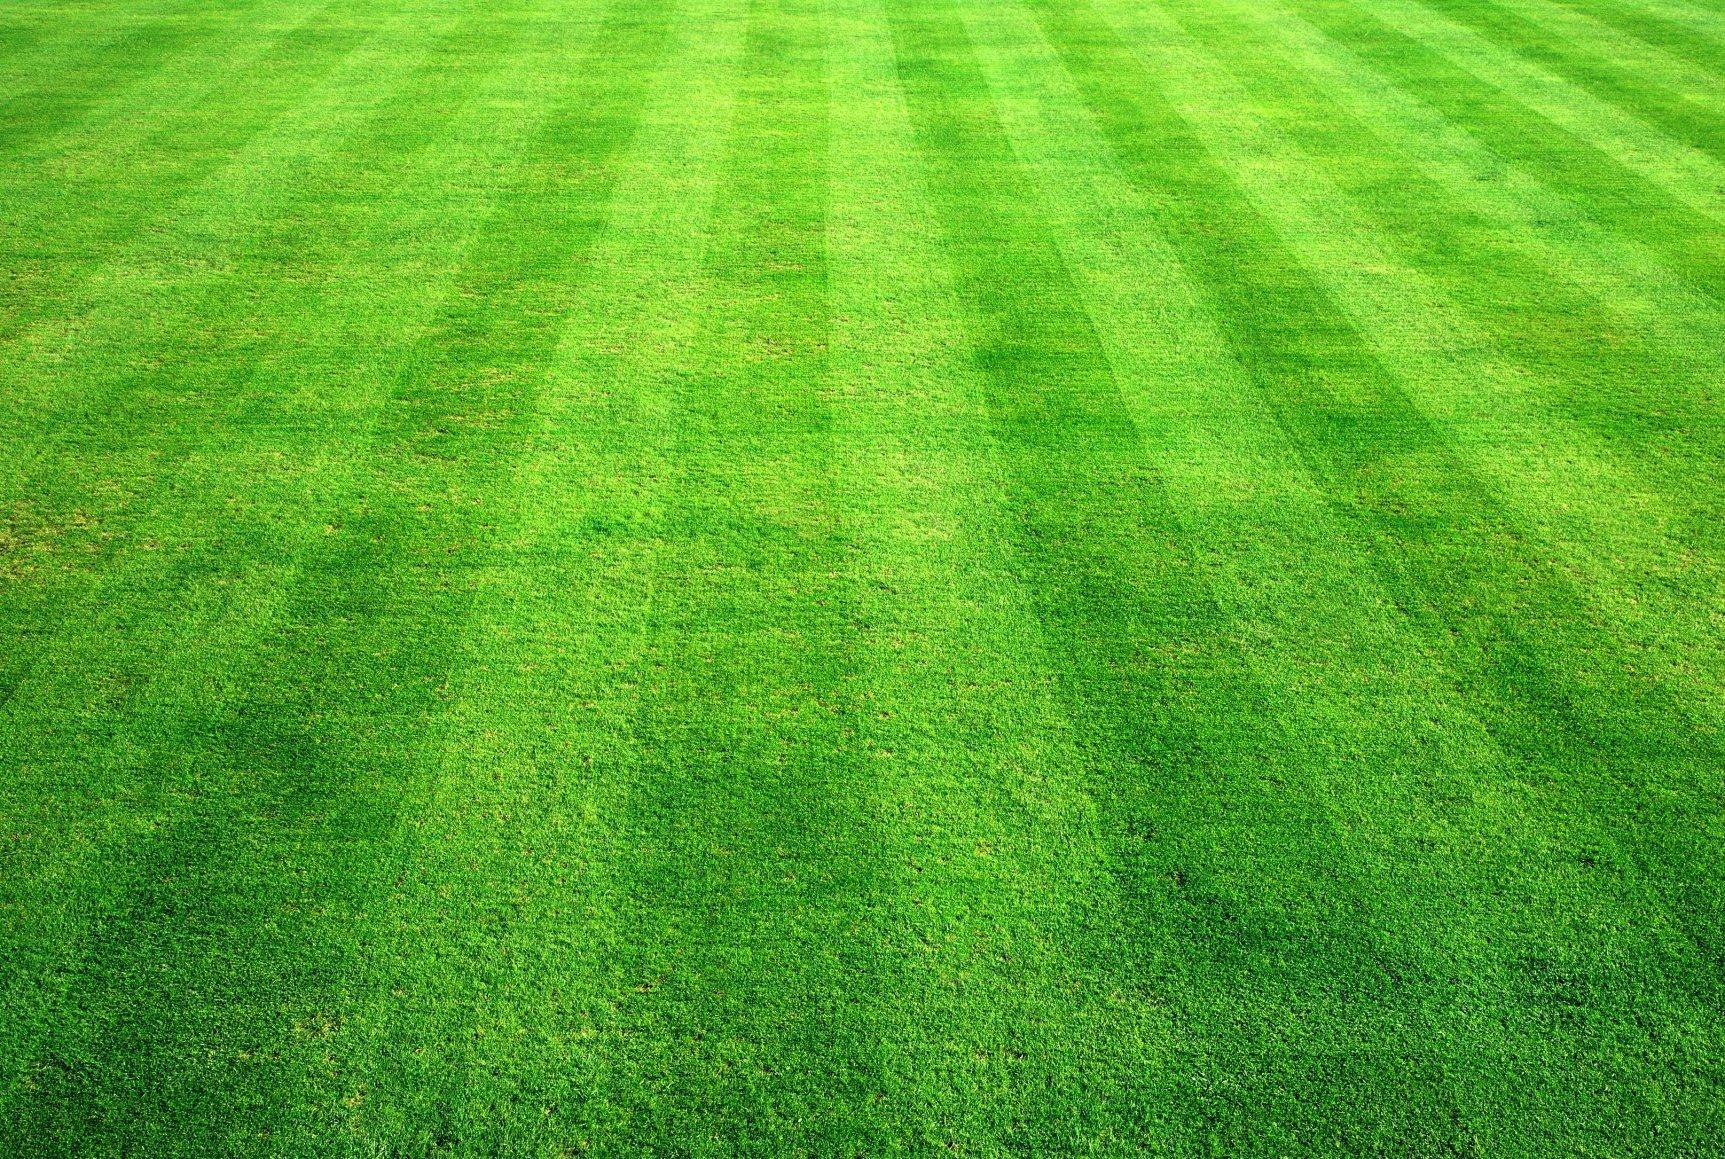 Hình ảnh thảm cỏ xanh trên sân bóng